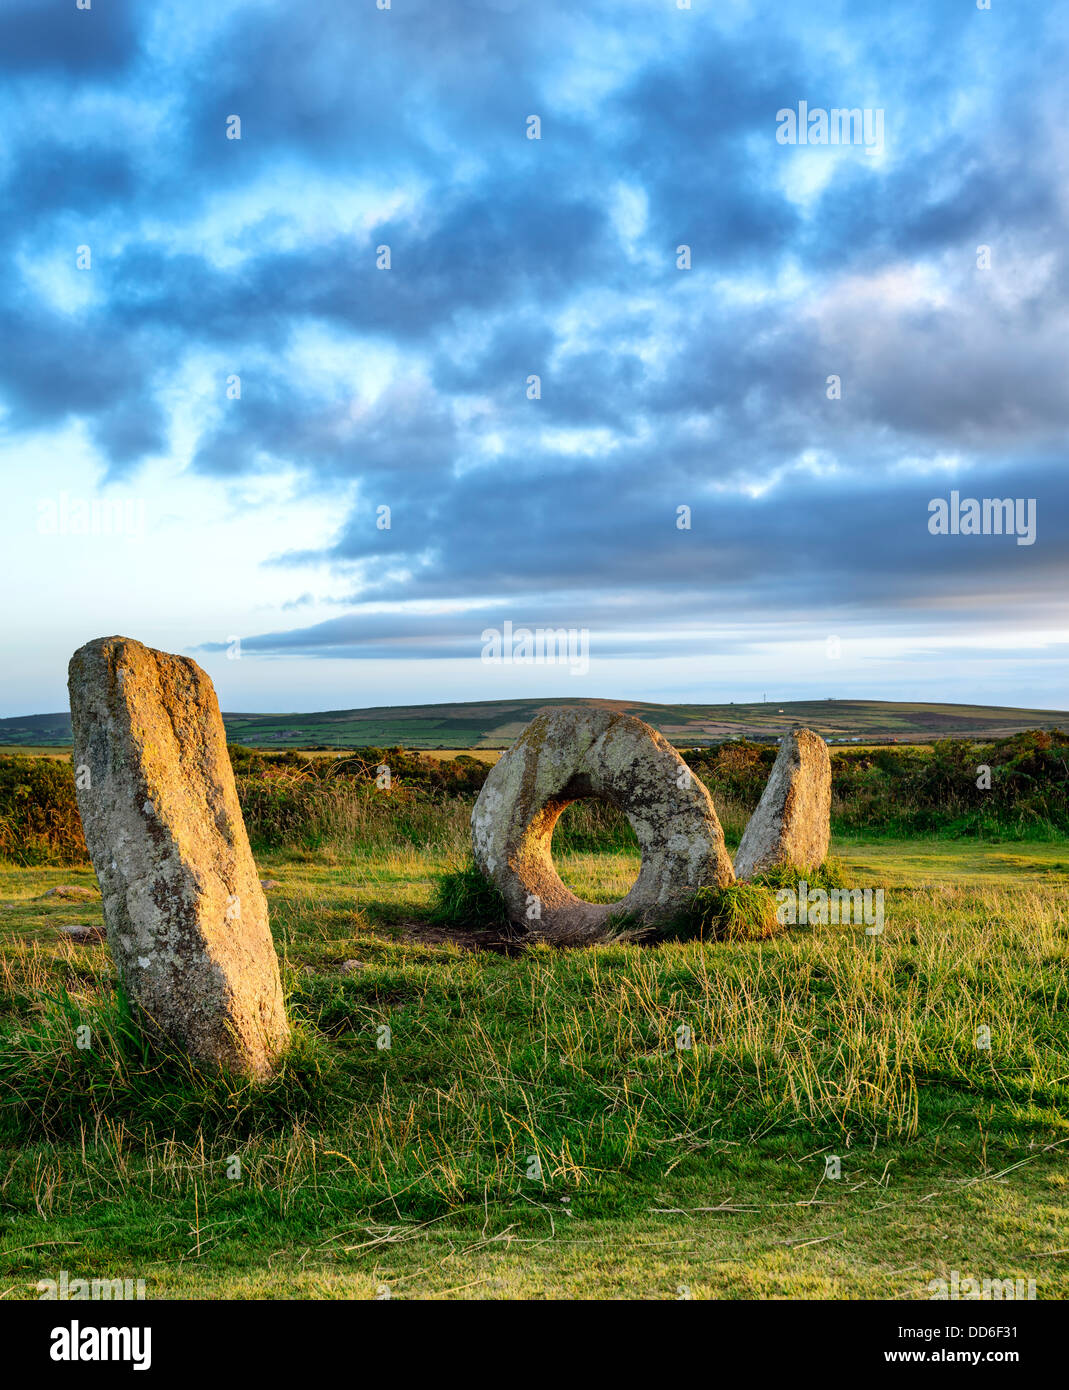 Die Männer ein Tol Menhire sagt in der Nähe von Penzance in Cornwall, Legende, vorbei an einer Person durch die gelochte Stein Kuren Stockfoto